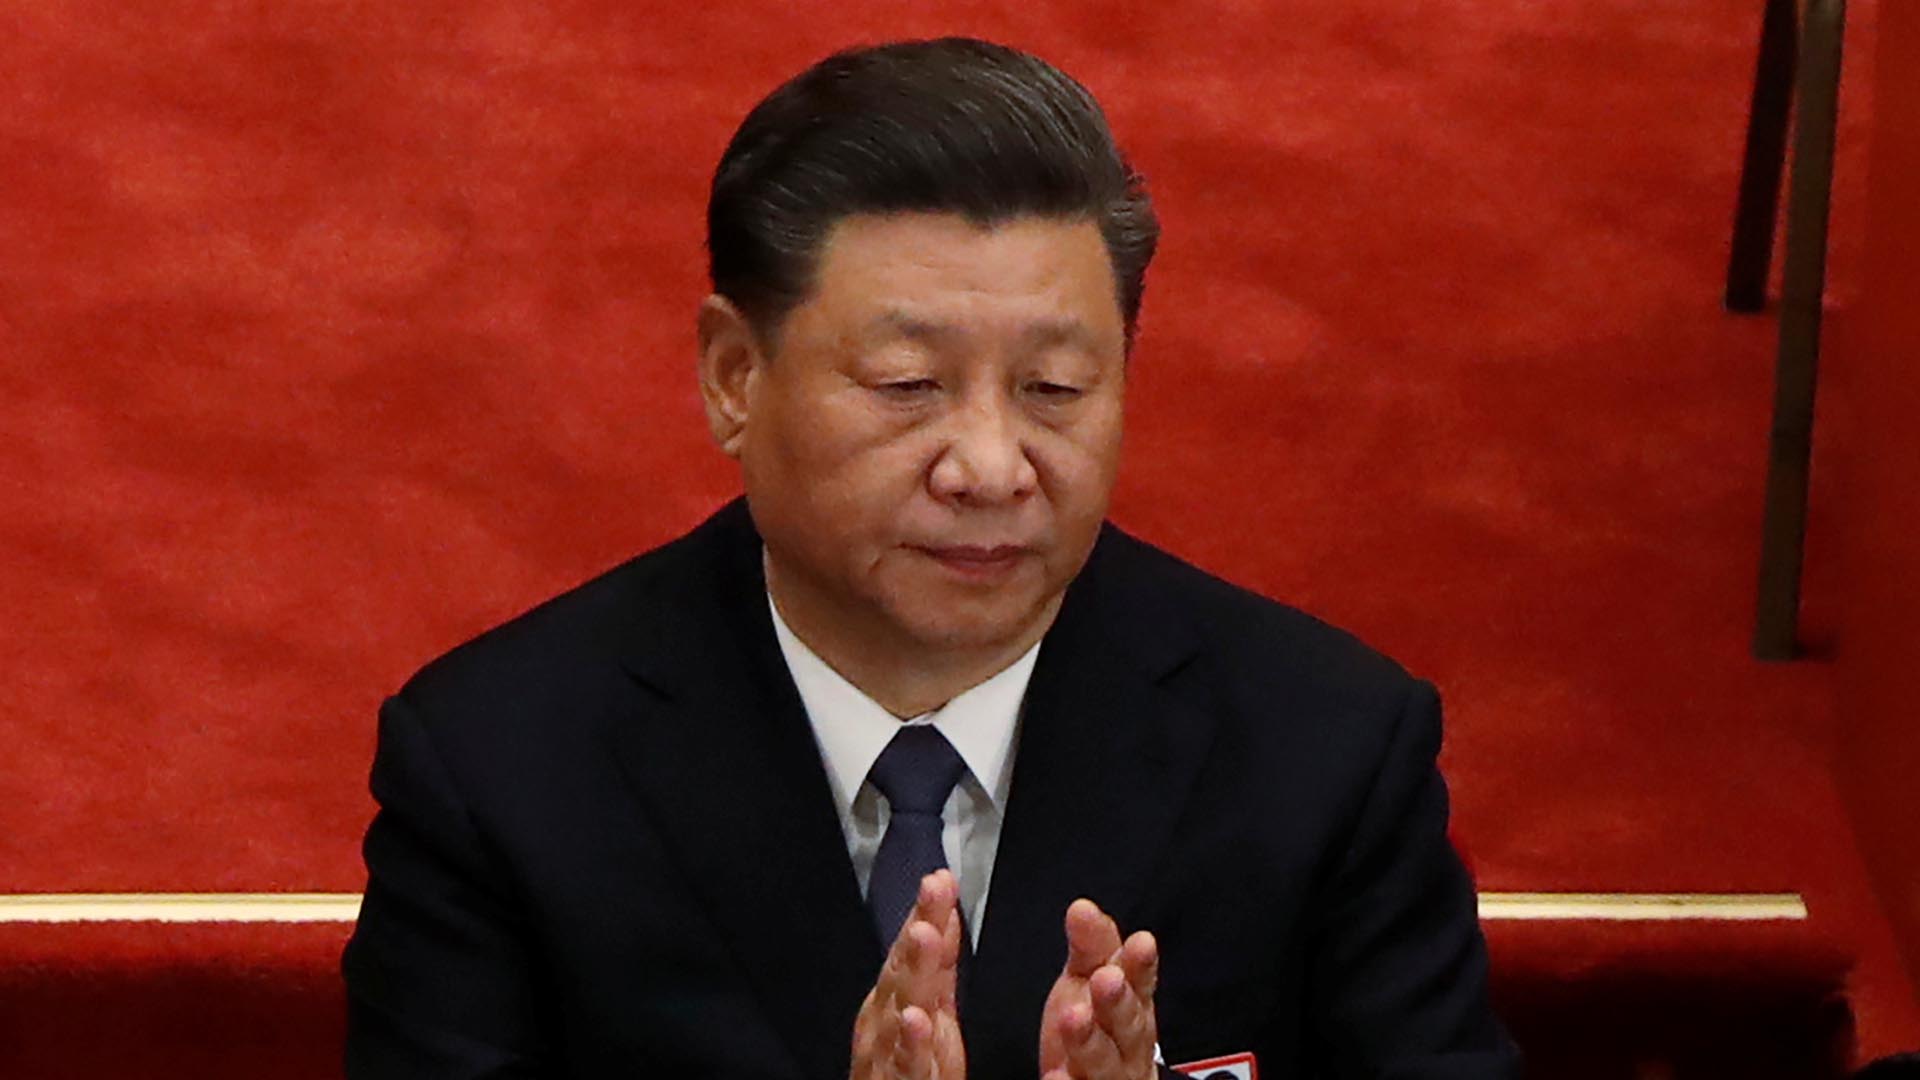 Pese a la condena internacional, el régimen de Xi Jinping negó los tratos discriminatorios contra la comunidad internacional (REUTERS/Carlos Garcia Rawlins)